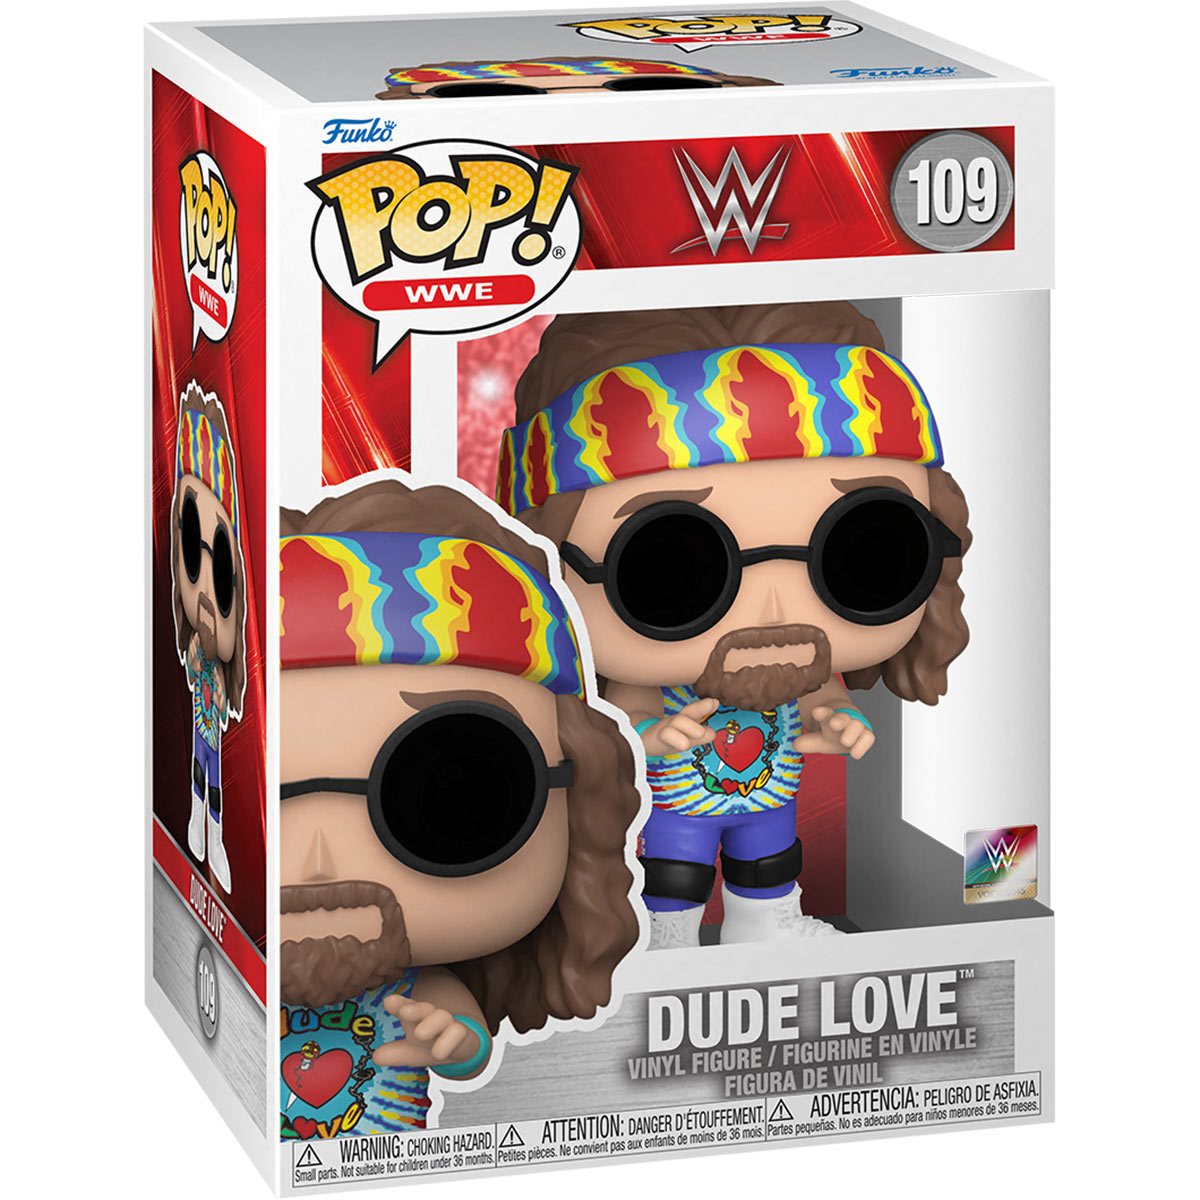 WWE: Dude Love Pop! Vinyl Figure (109)